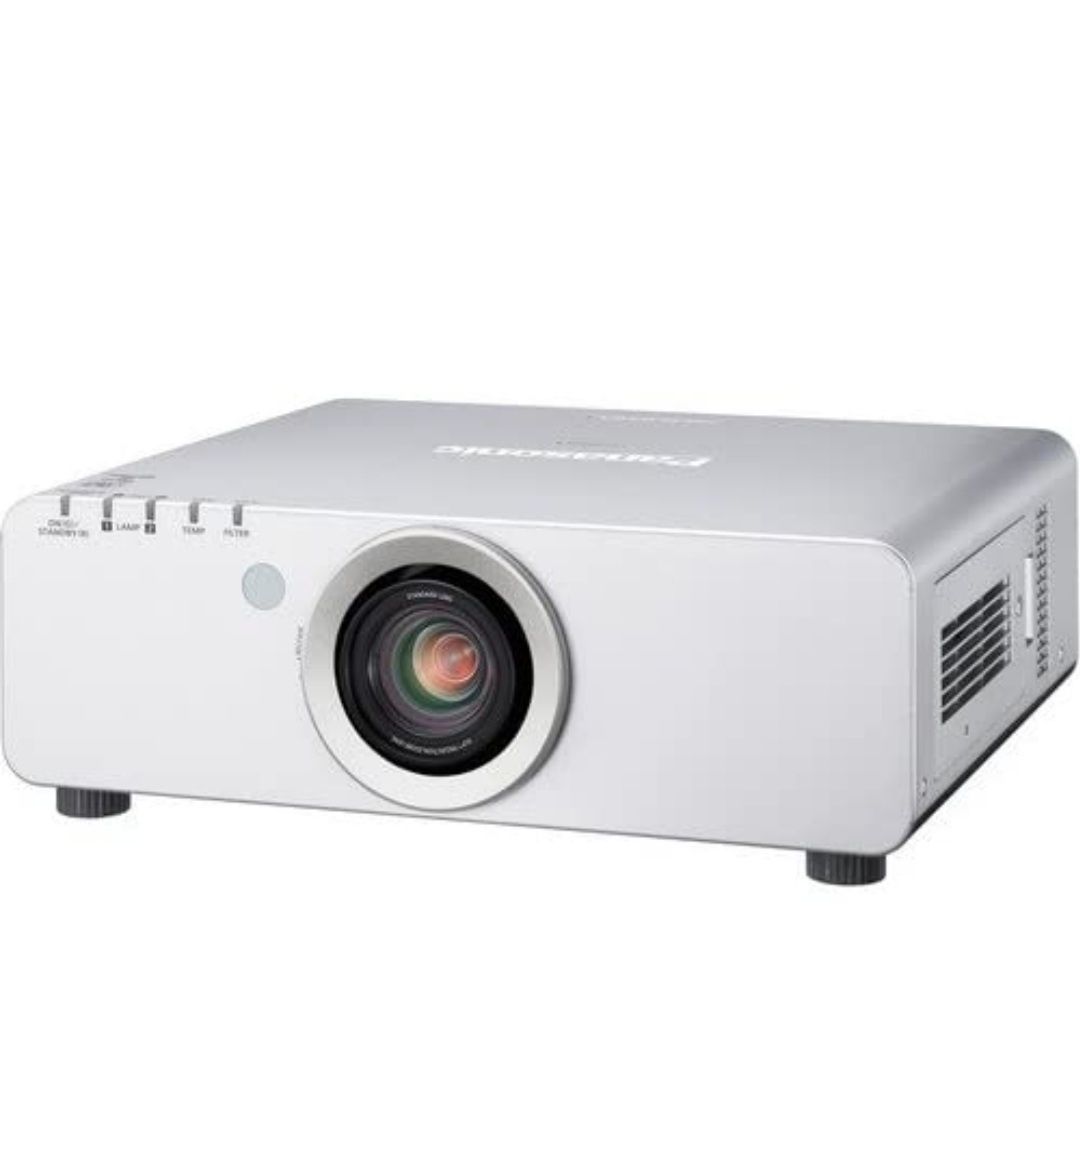 Videoproiector pentru evenimente Panasonic PT-DW640US nou in cutie